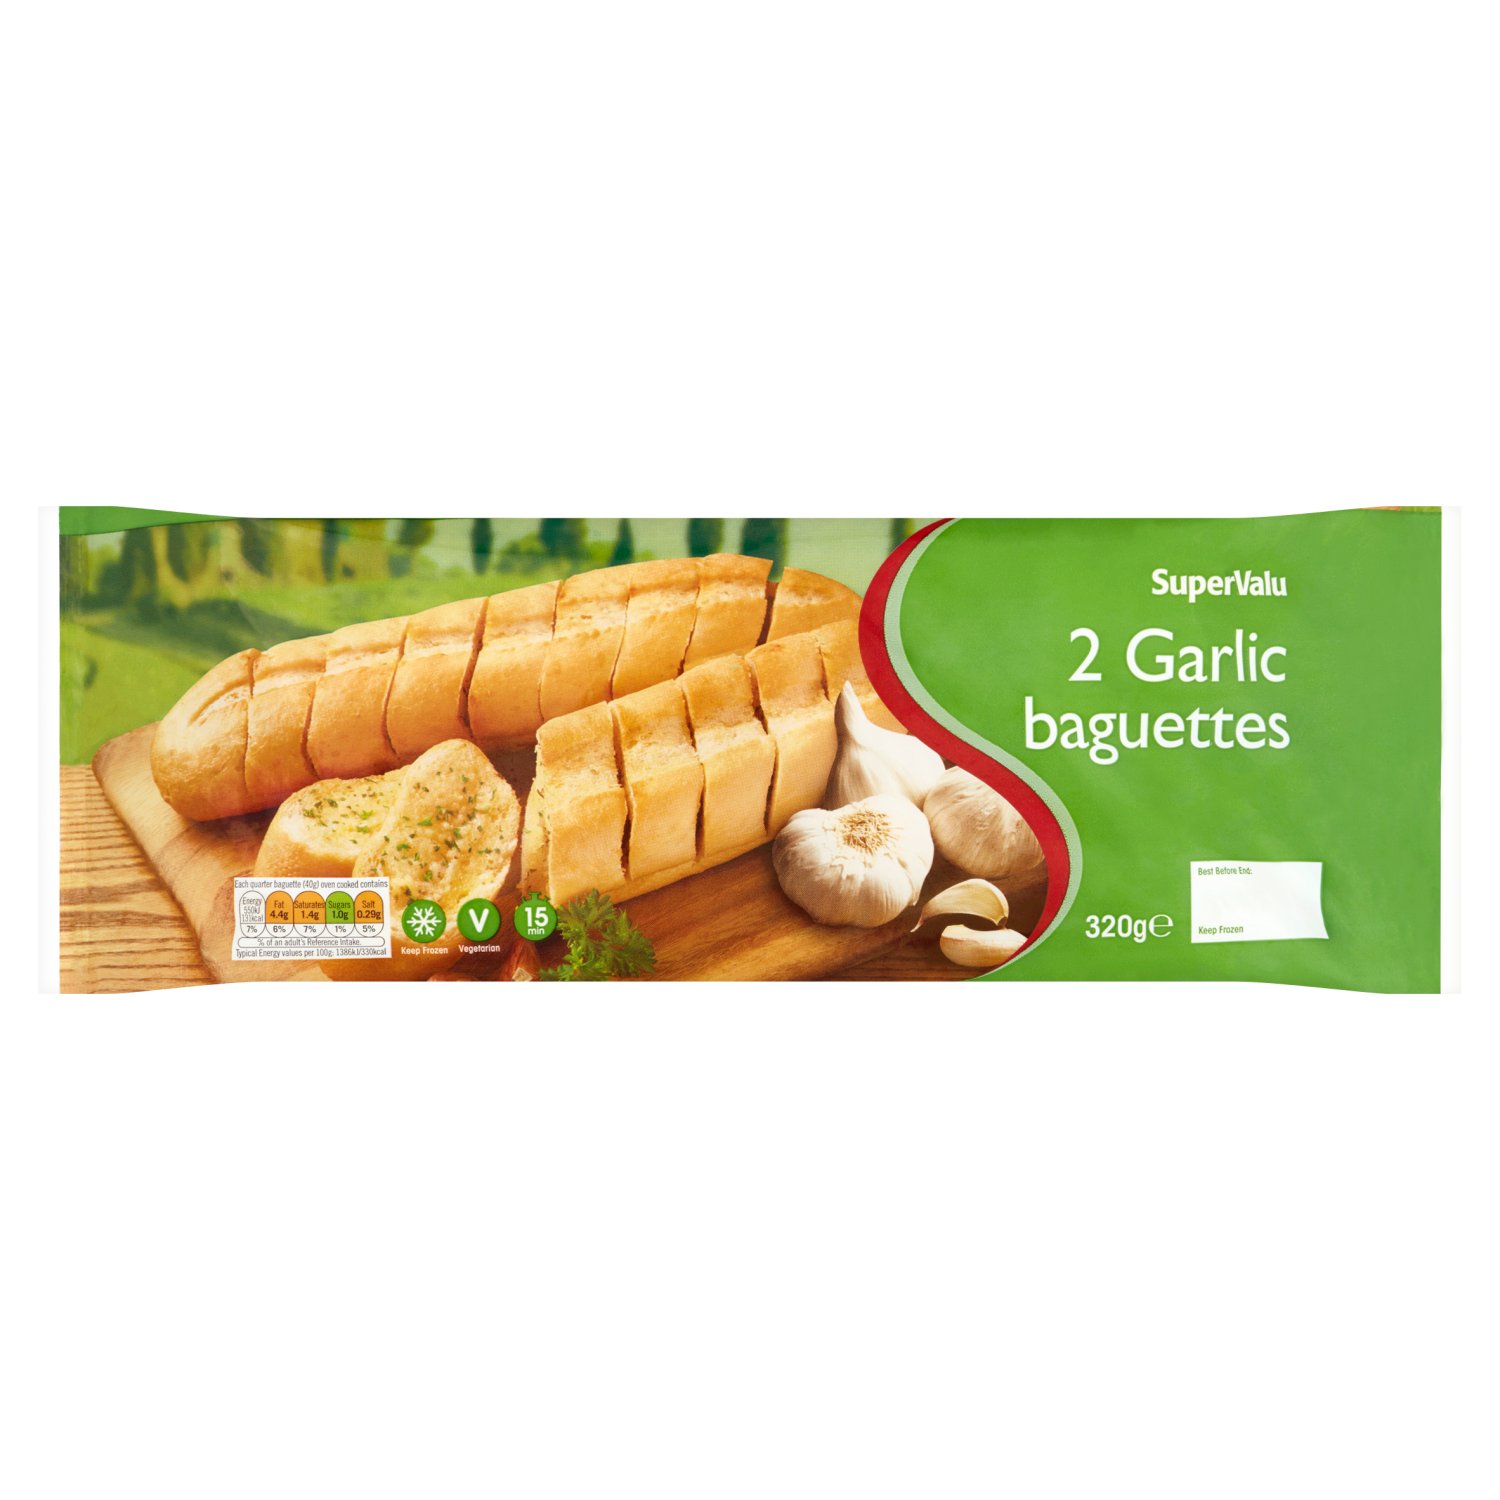 SuperValu Garlic Baguettes 2 Pack (320 g)